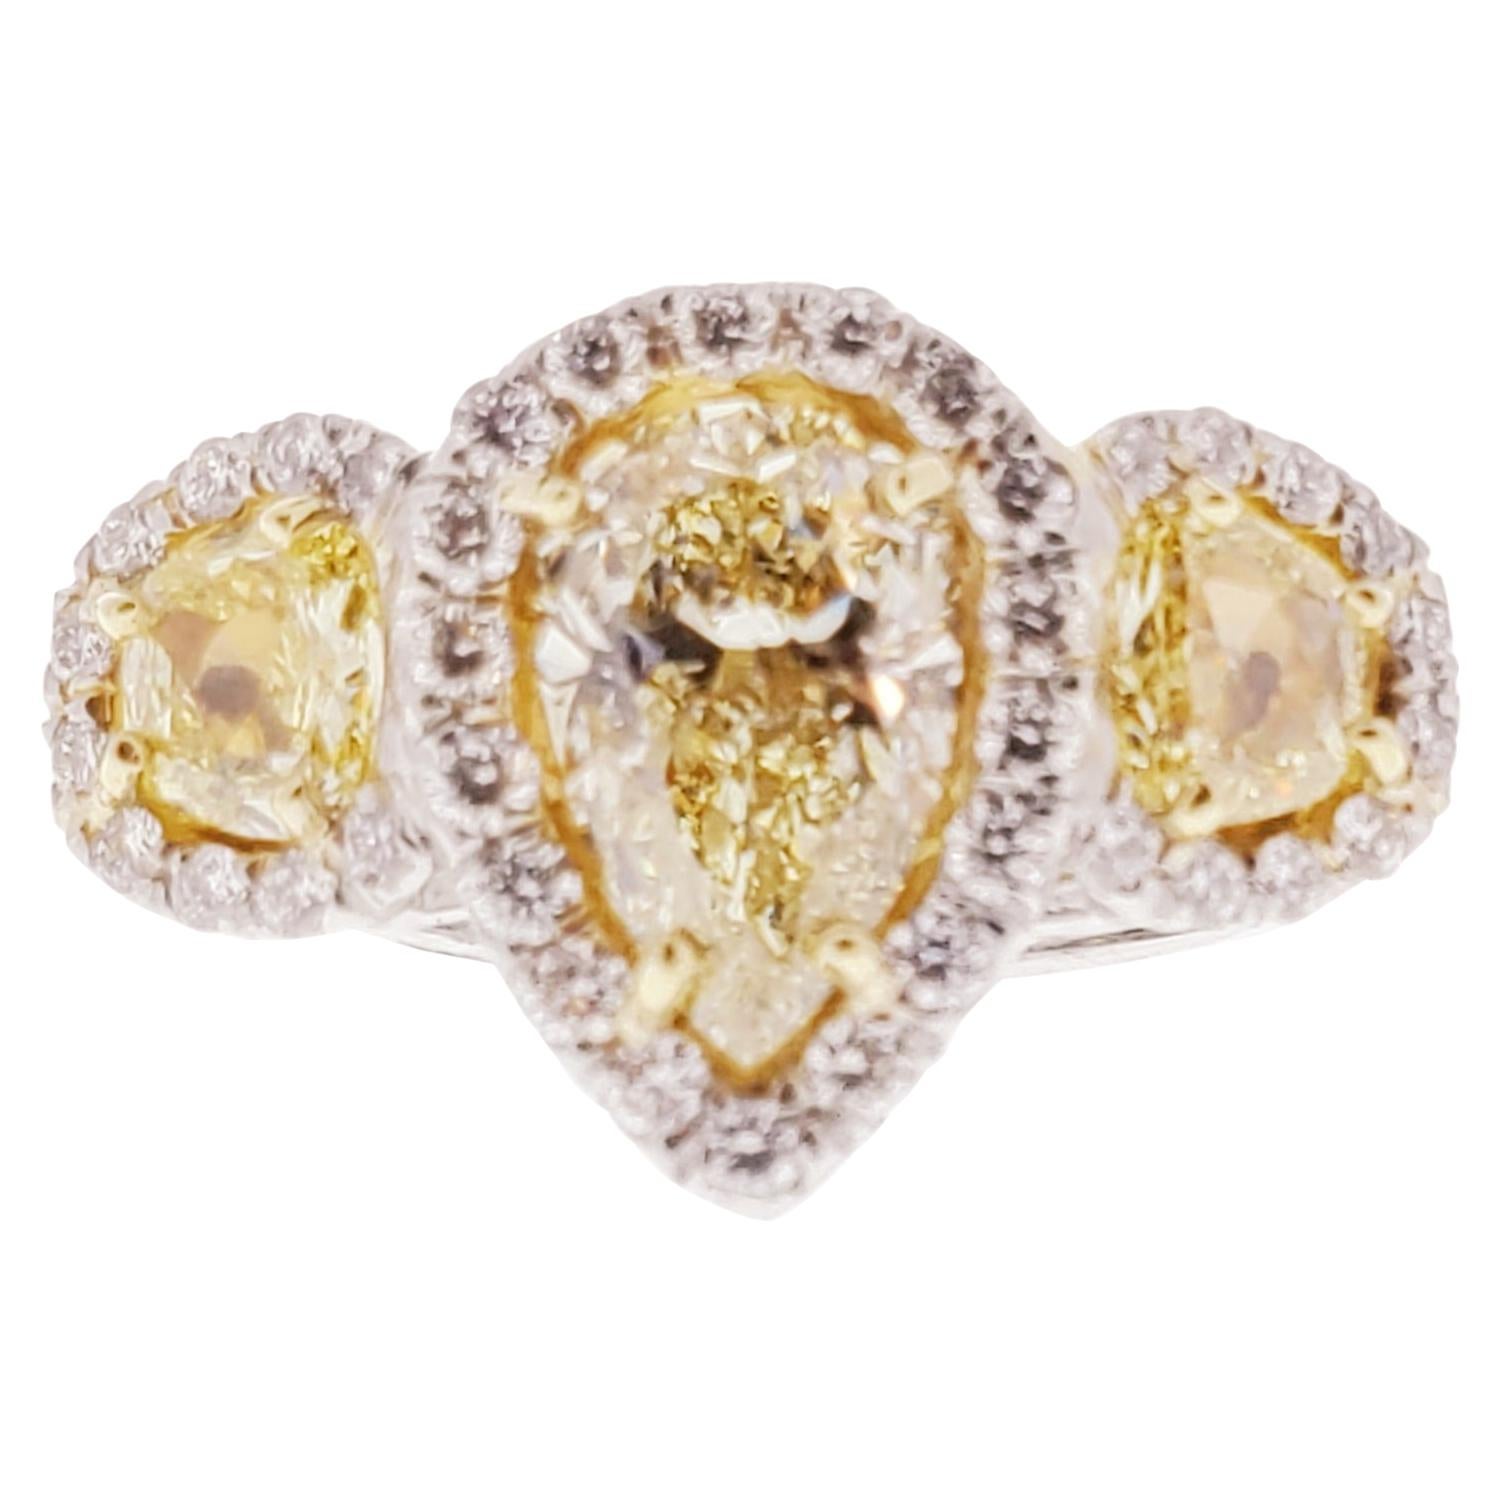 GIA Certified 1.53 Carat Natural Yellow Diamond Ring in Platinum